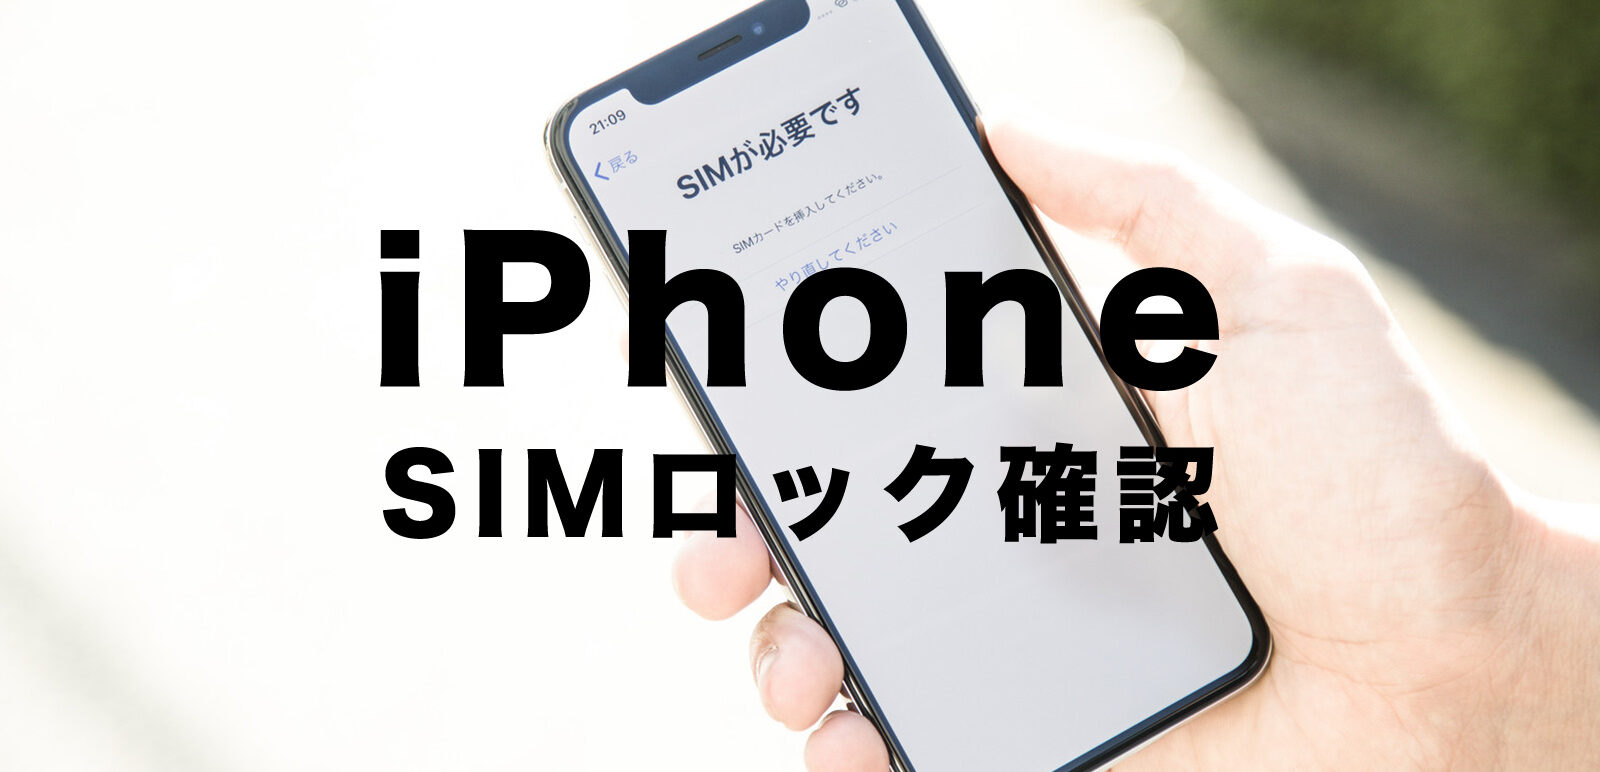 Iphone sim ロック 解除 ソフトバンク